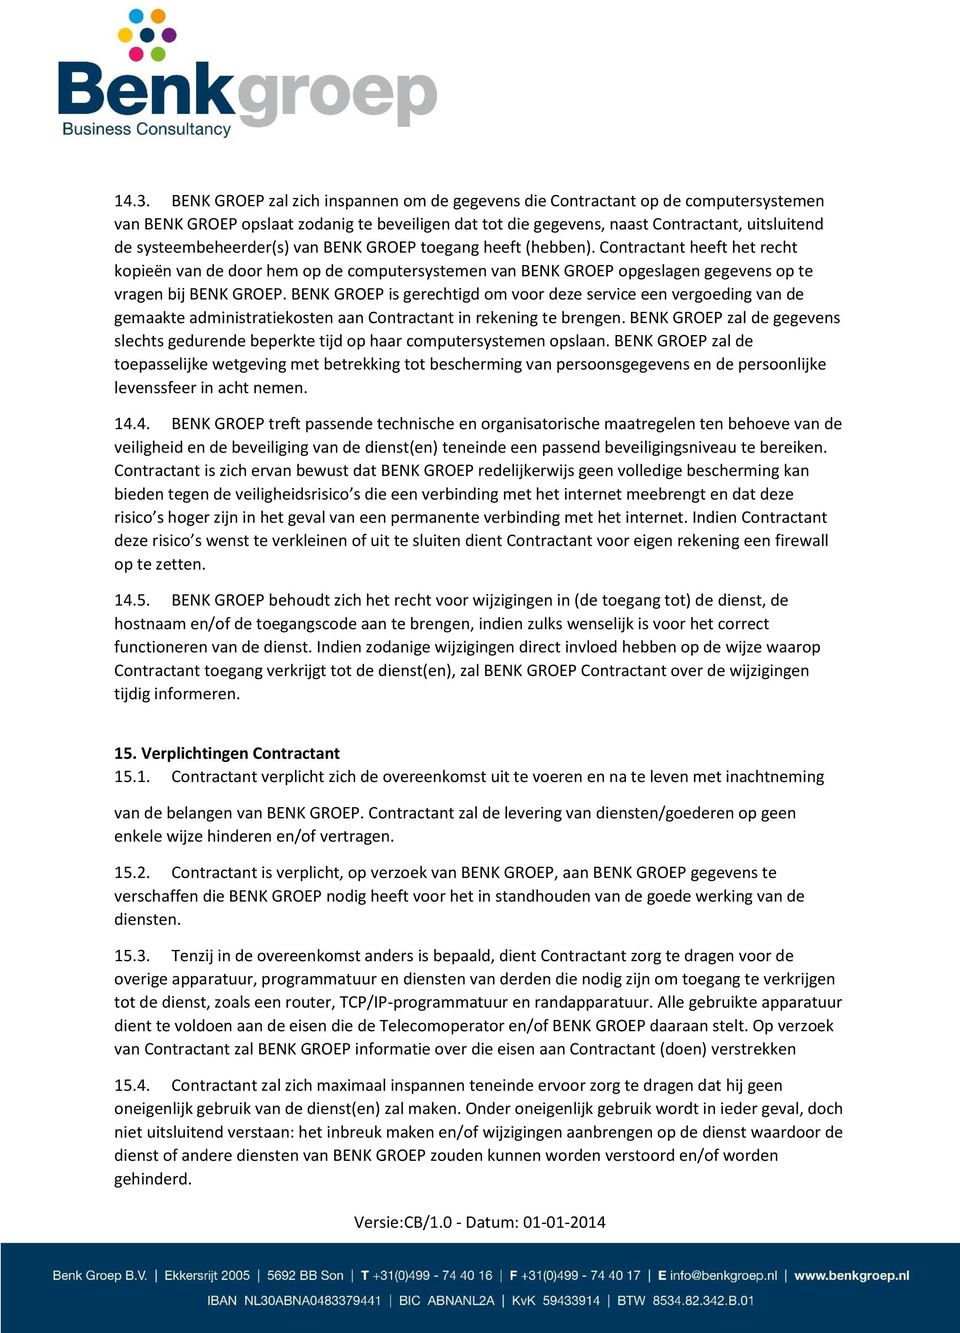 BENK GROEP is gerechtigd om voor deze service een vergoeding van de gemaakte administratiekosten aan Contractant in rekening te brengen.